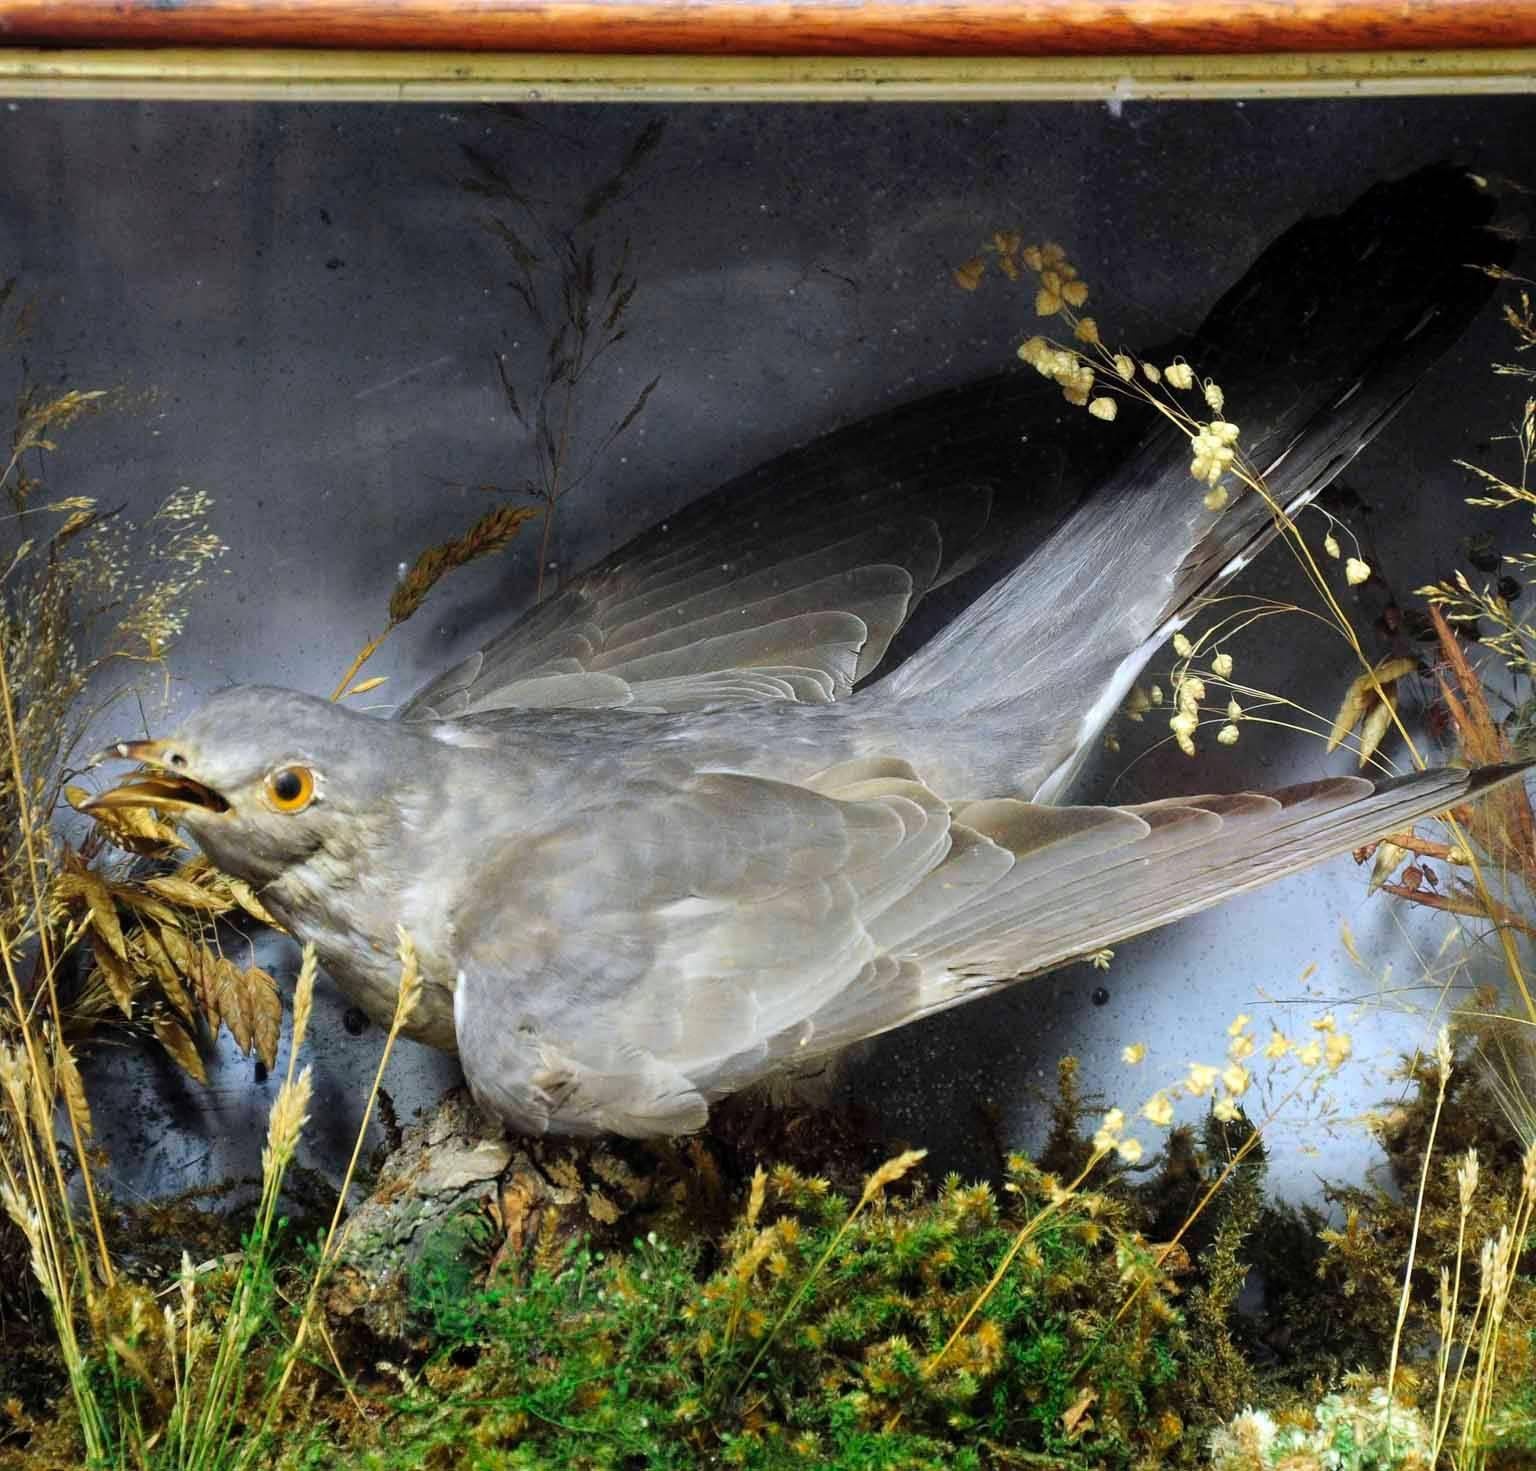 German Antique Taxidermy Display Case, Cuckoo